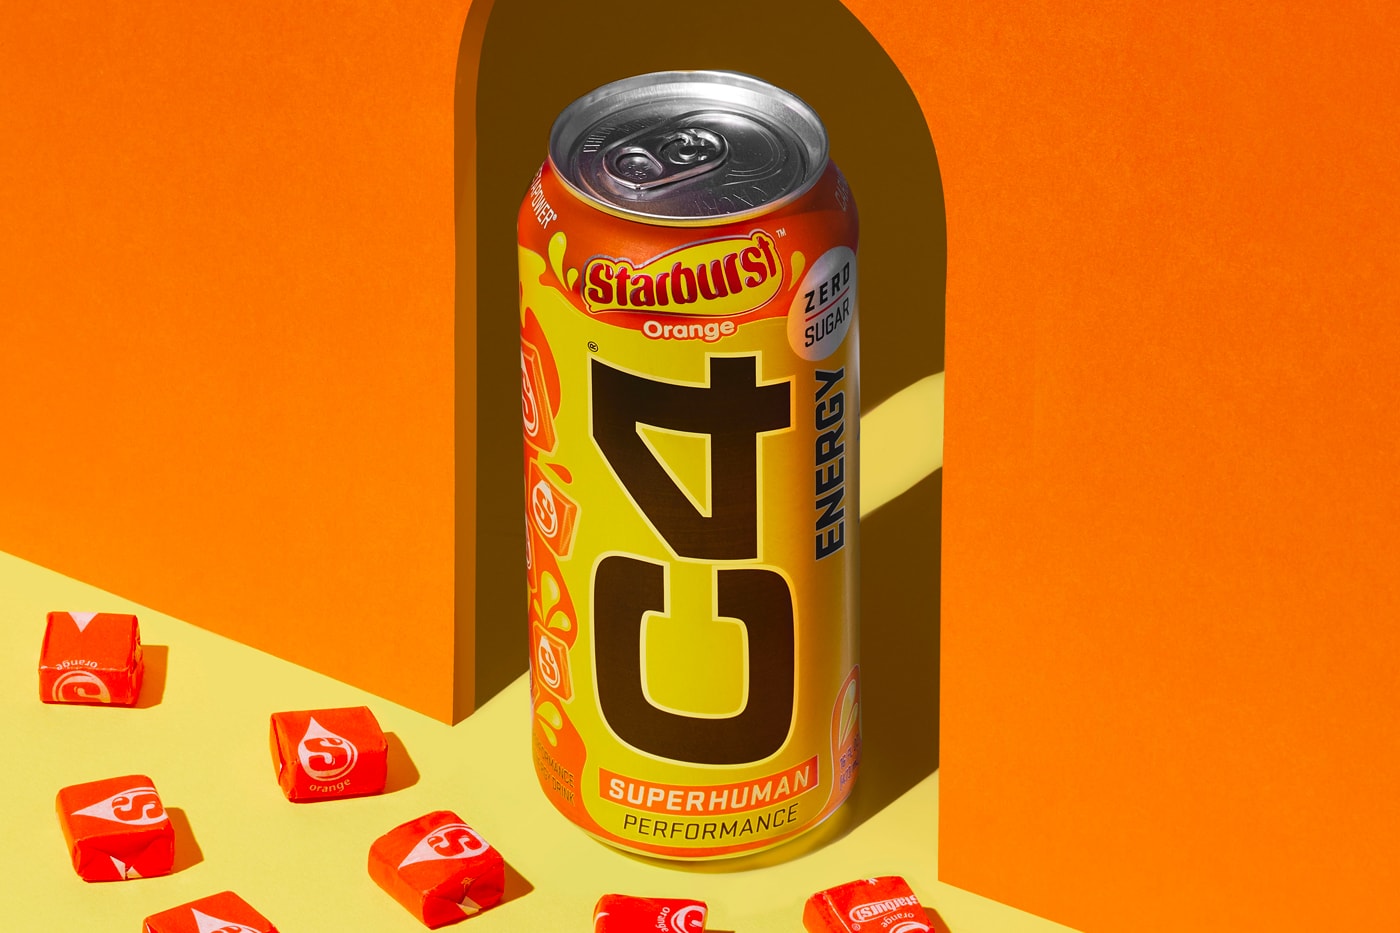 Starburst C4 Energy Drinks Release Taste Review Nutrabolt Mars Wrigley